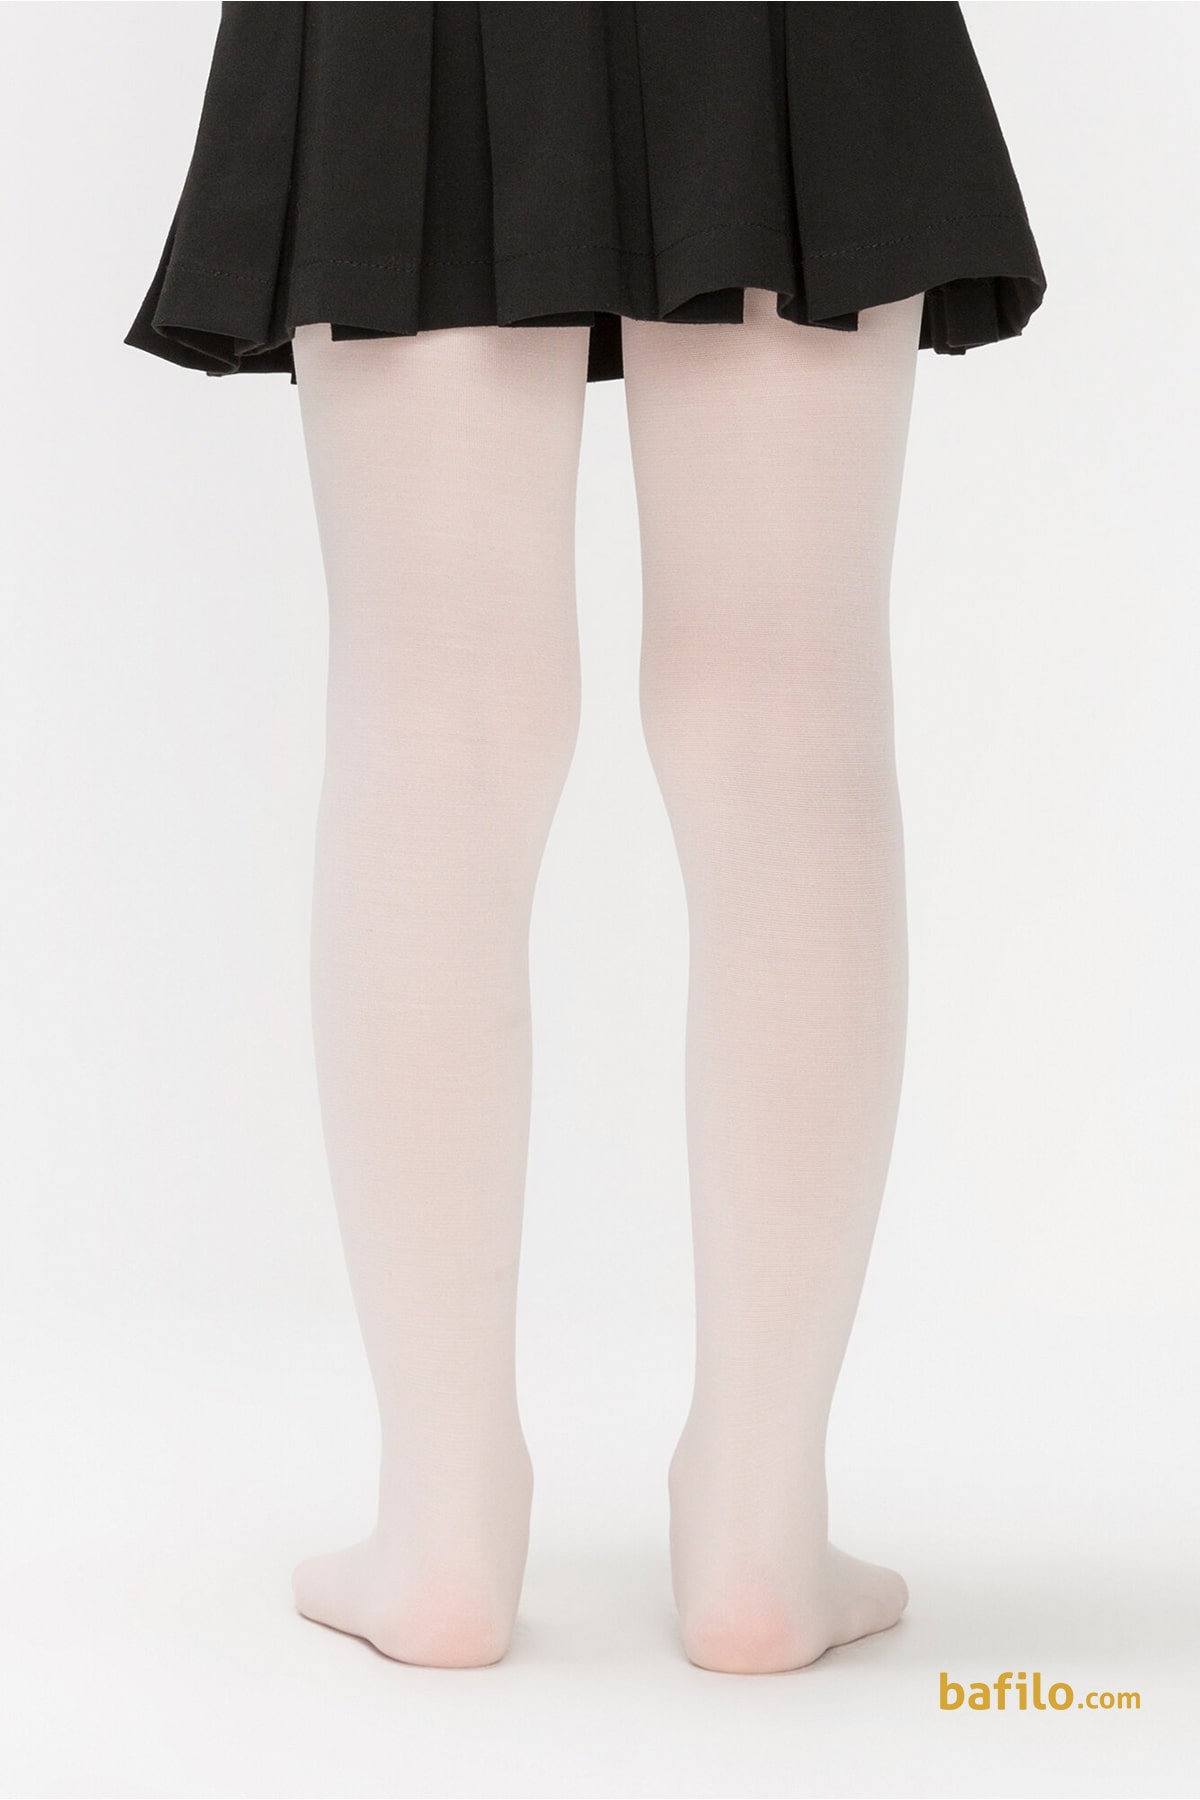 جوراب شلواری ساده دخترانه پنتی Mikro 40 - وانیلی